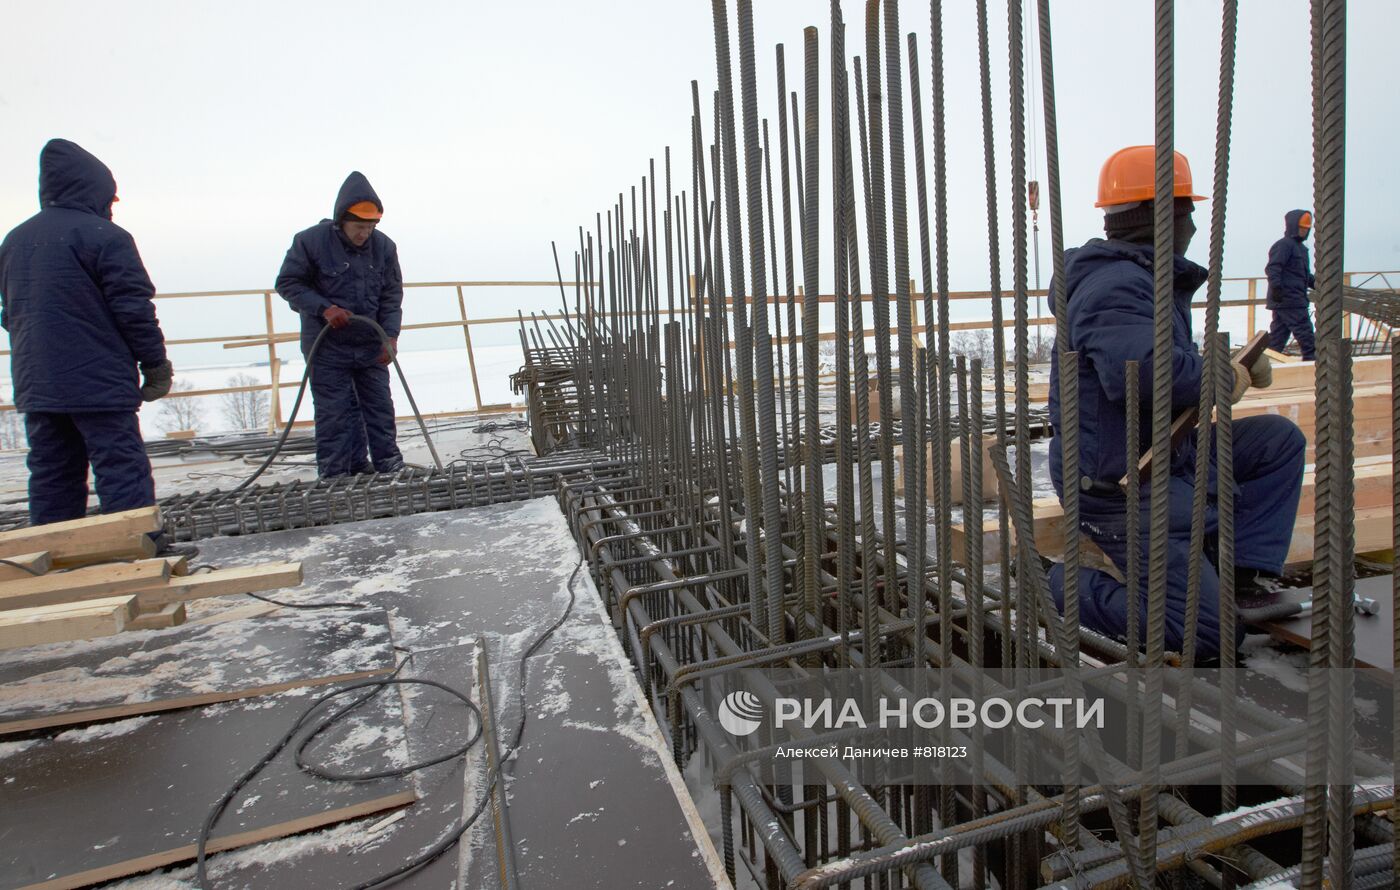 Строительство нового стадиона "Зенит" в Санкт-Петербурге